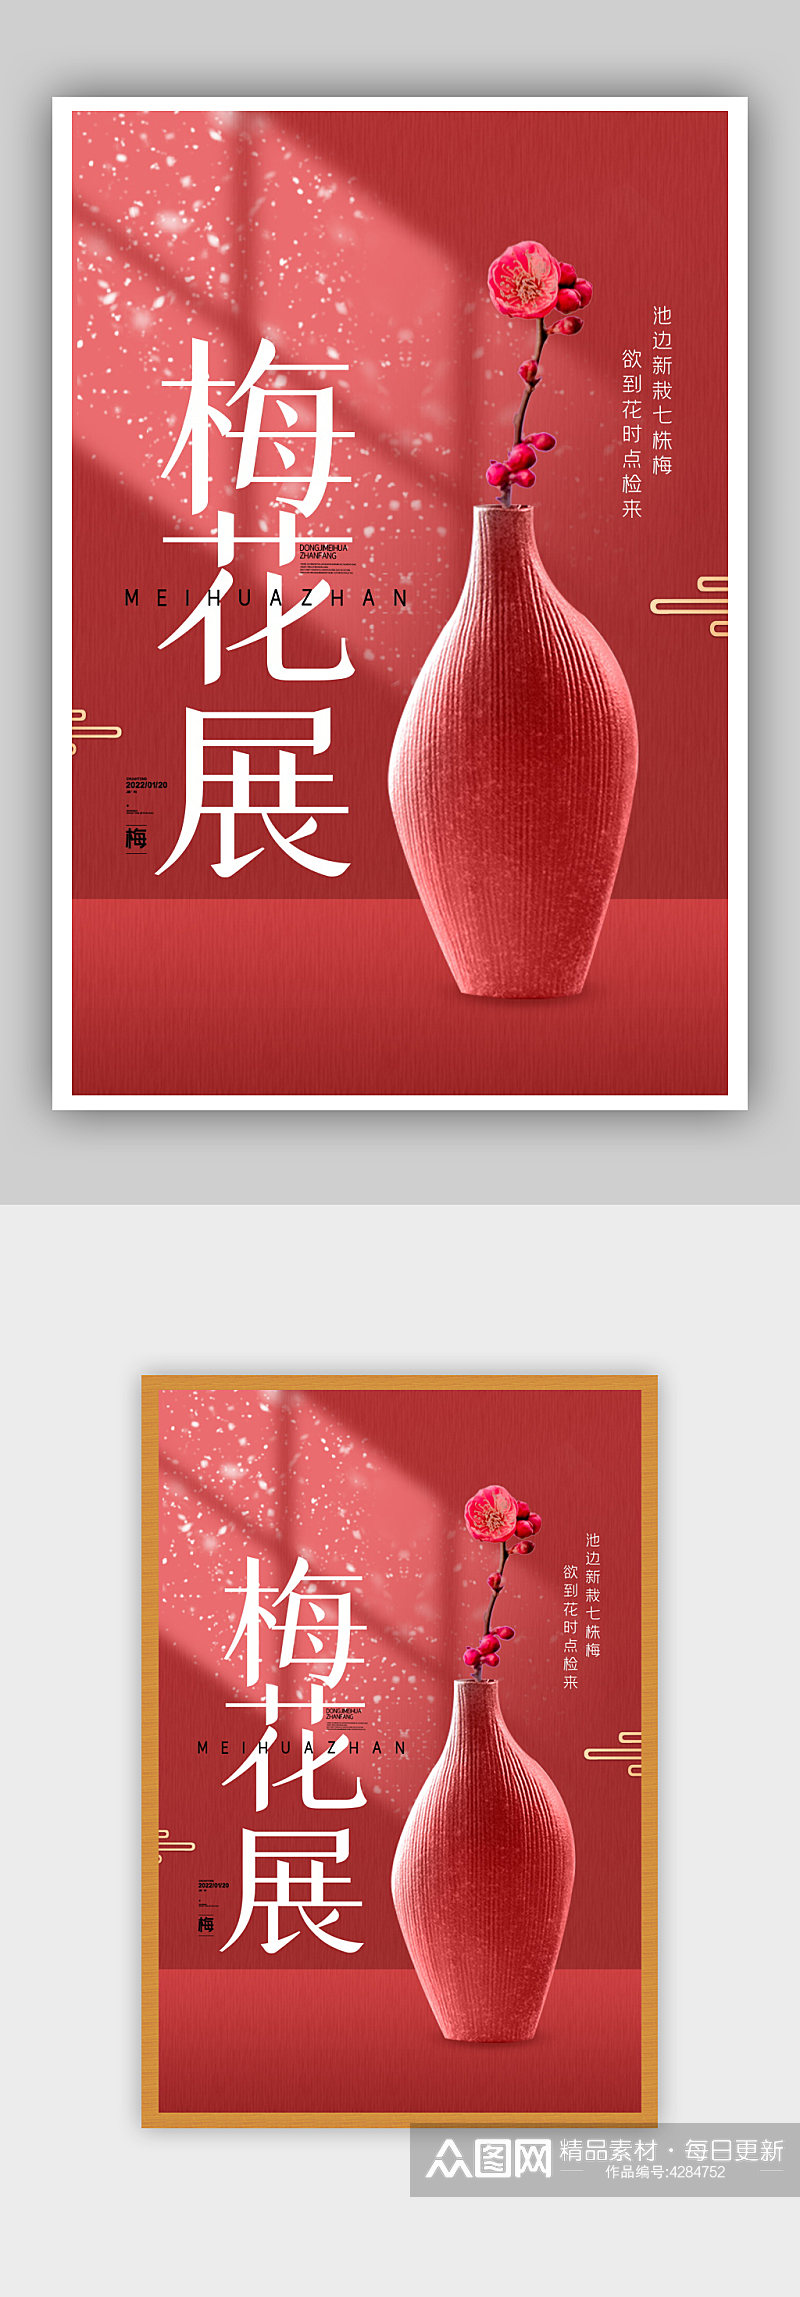 简约红色冬季梅花展览活动宣传海报素材